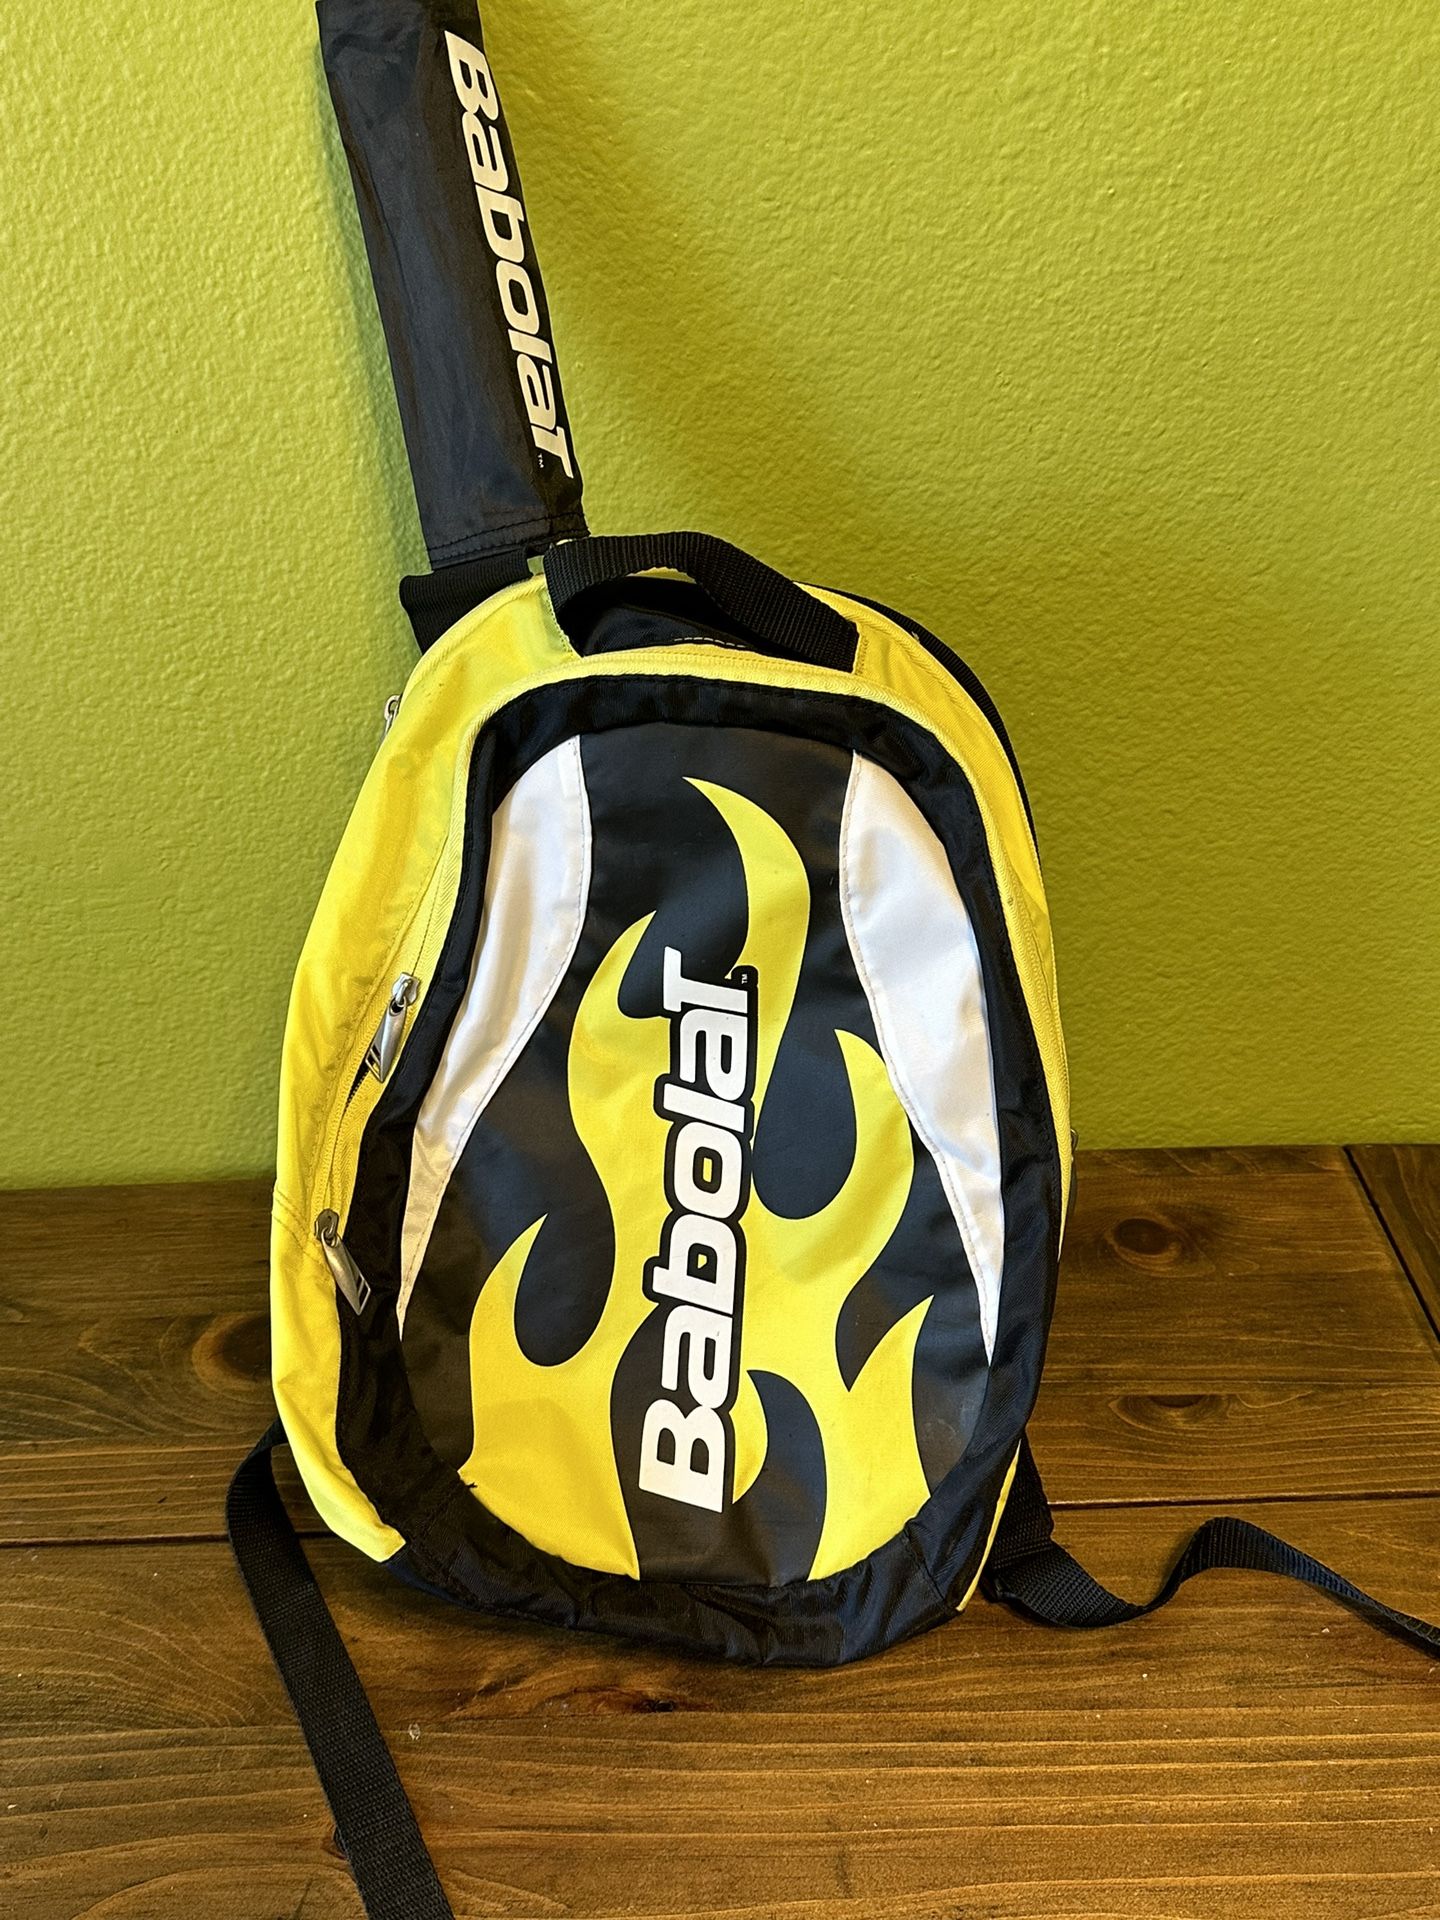 Junior Babolat Tennis Racket And Bag